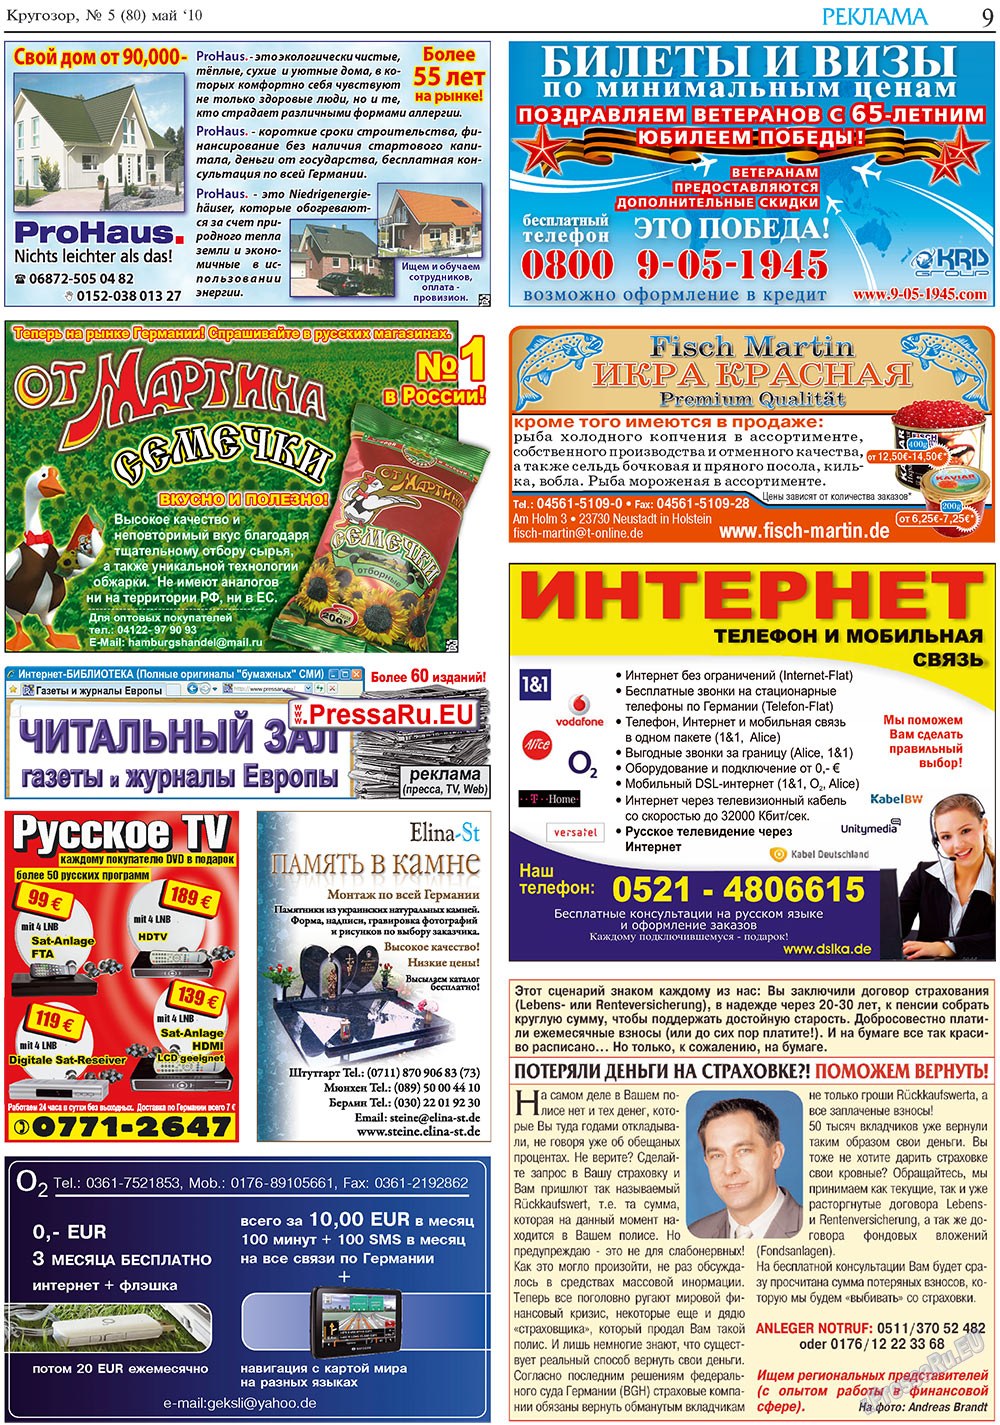 Кругозор плюс!, газета. 2010 №5 стр.9